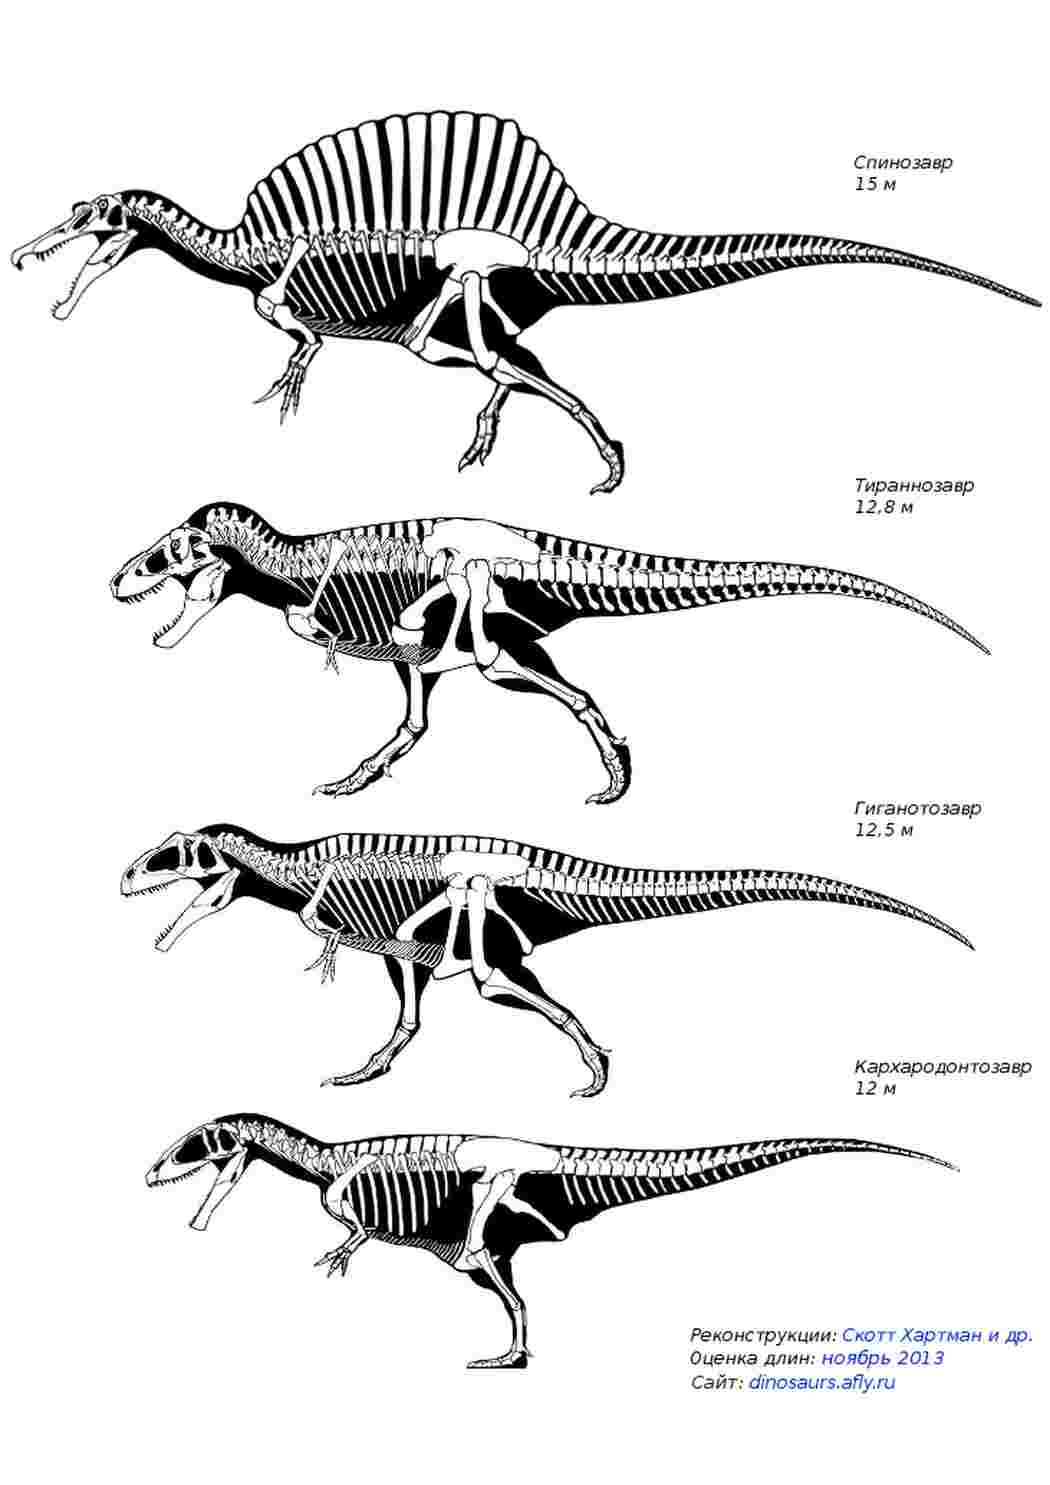 Гигантозавр травоядный